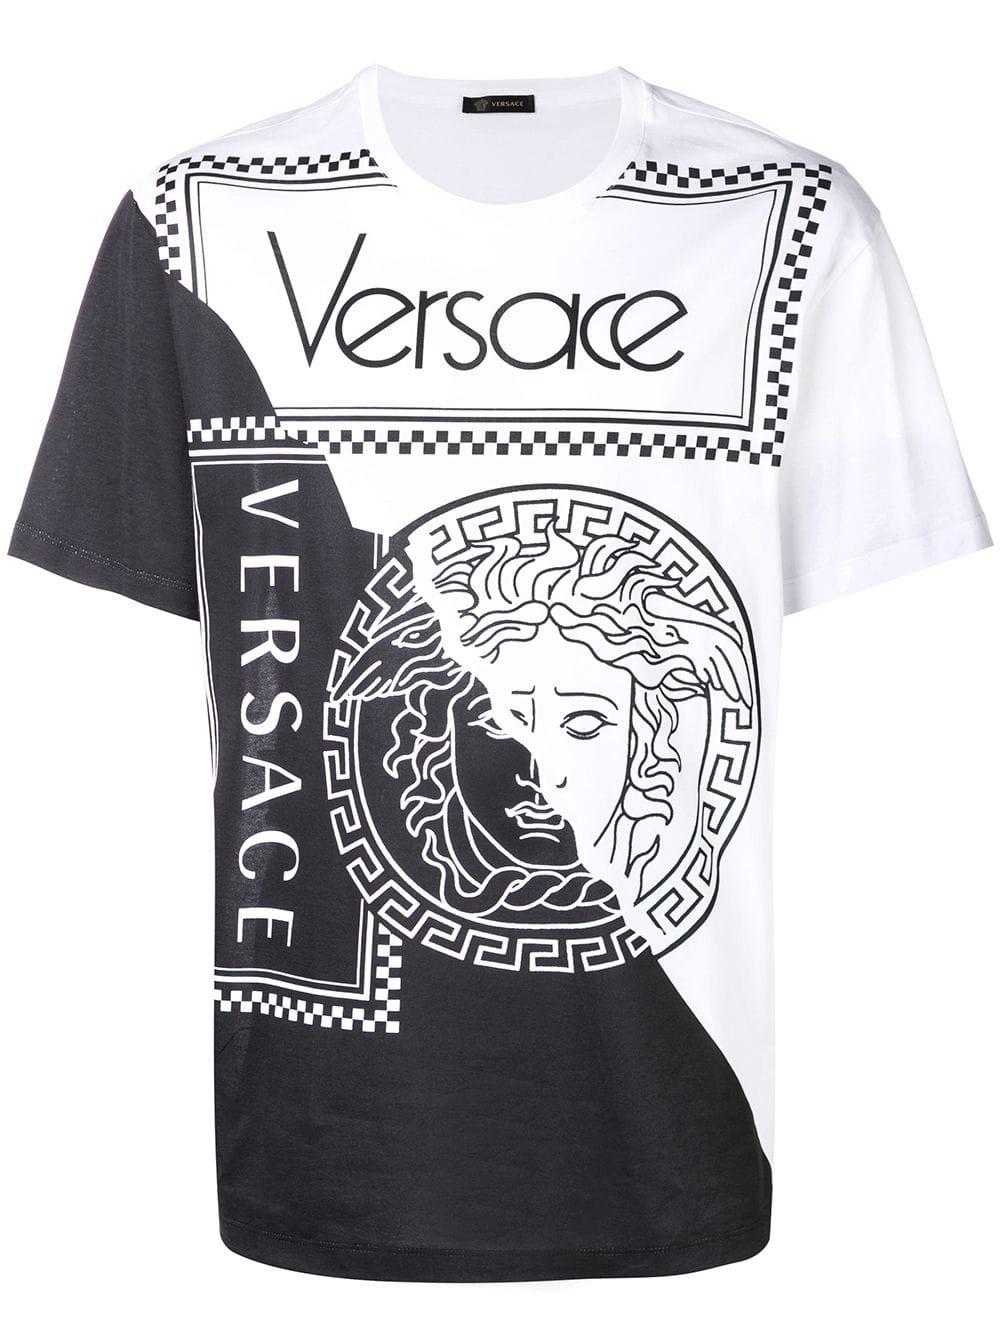 black and white versace shirt